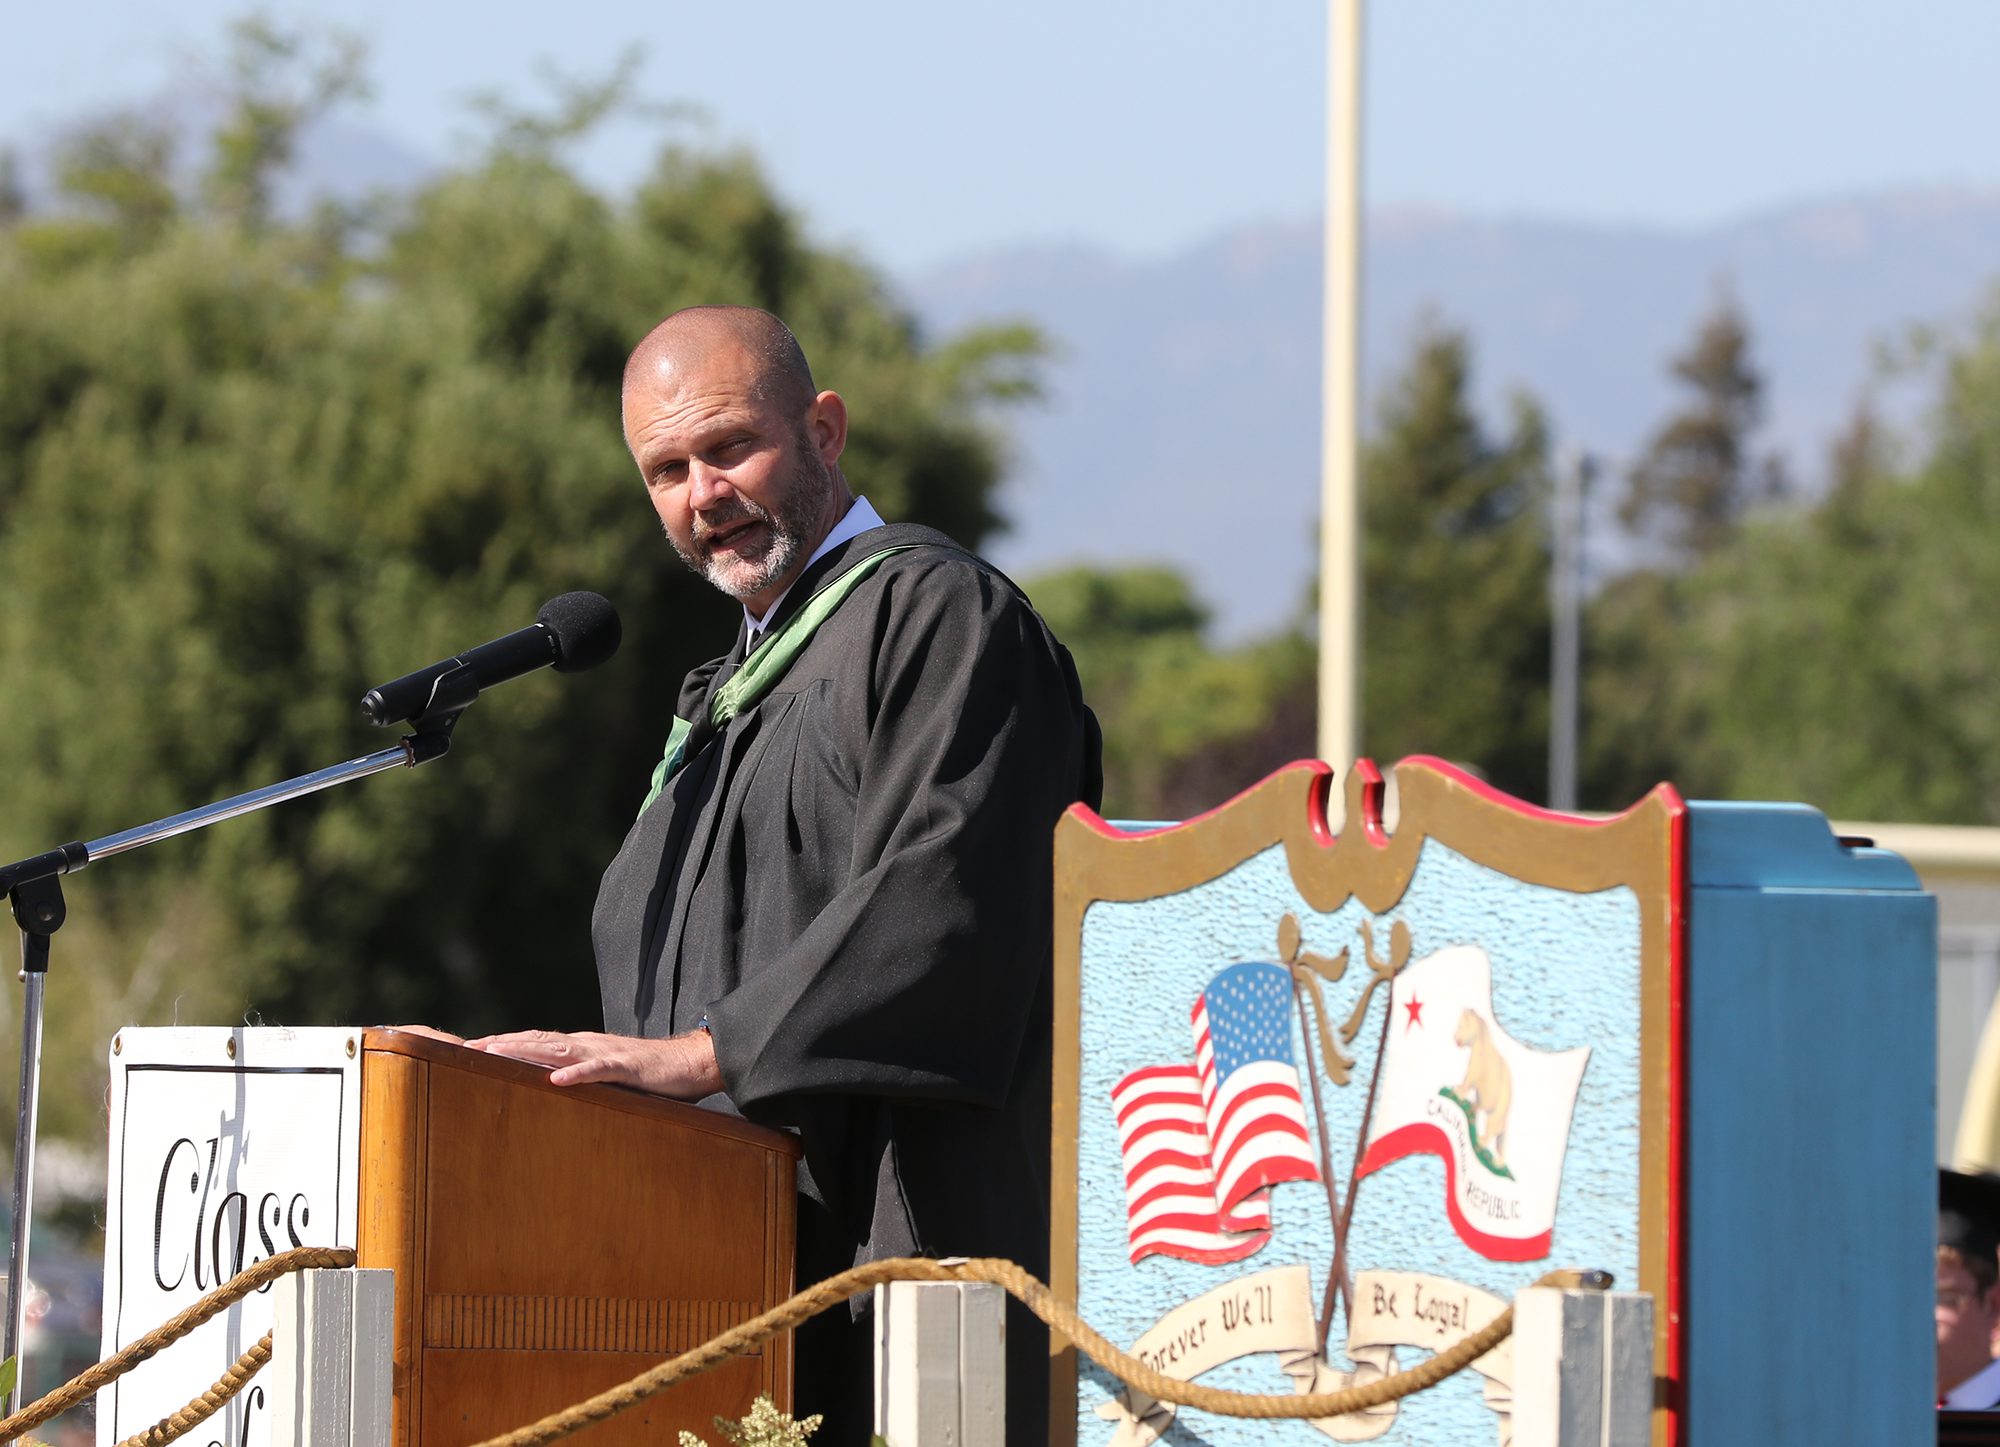 Mark Swanitz Named New Principal at Cabrillo High School